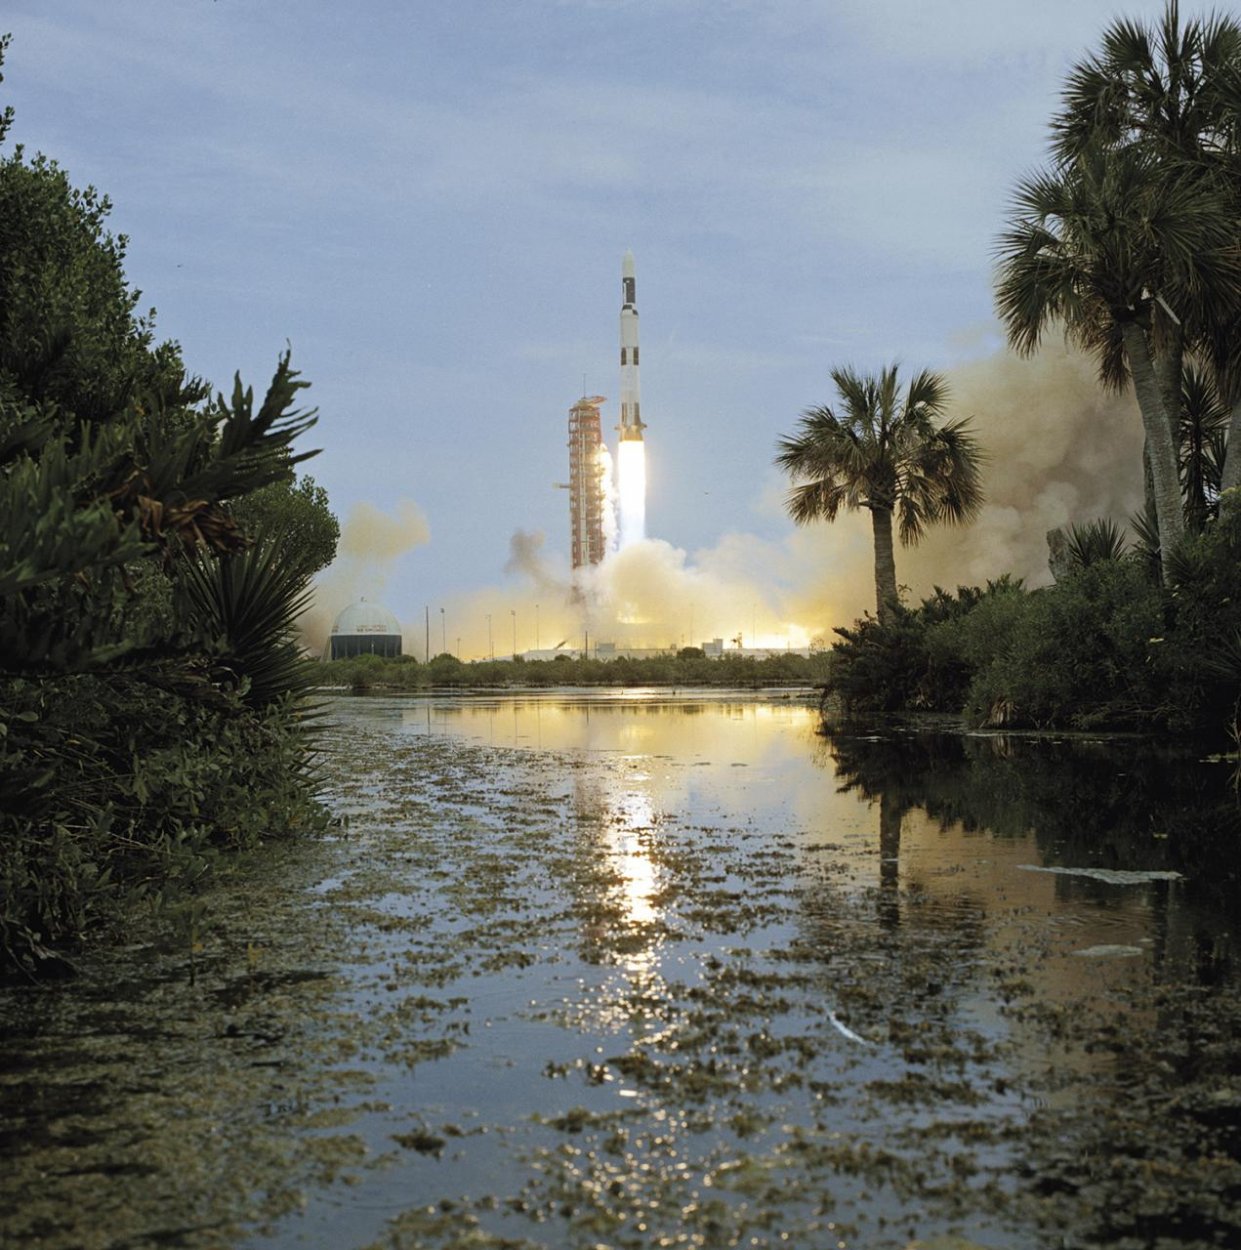 Saturn V a Skylab: Posledný a prvý